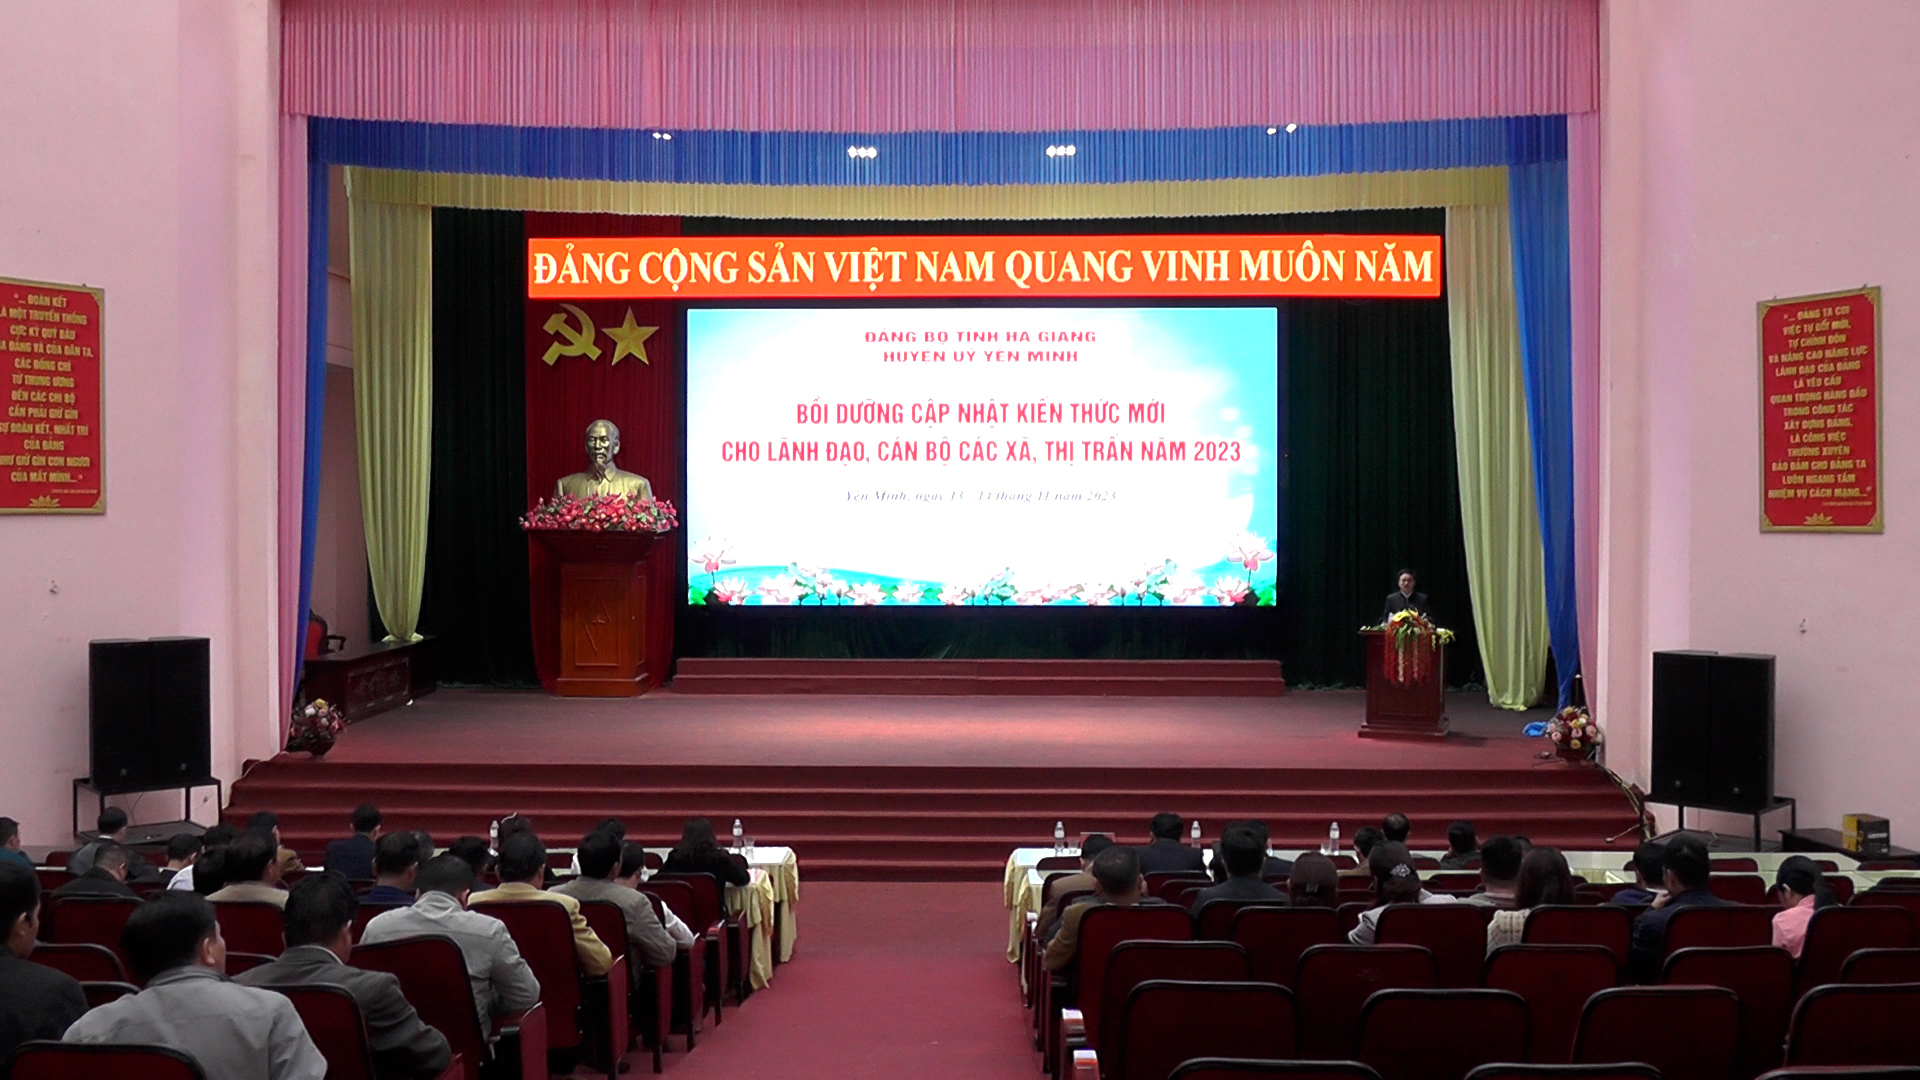 Yên Minh bồi dưỡng, cập nhật kiến thức mới cho lãnh đạo các xã, thị trấn năm 2023